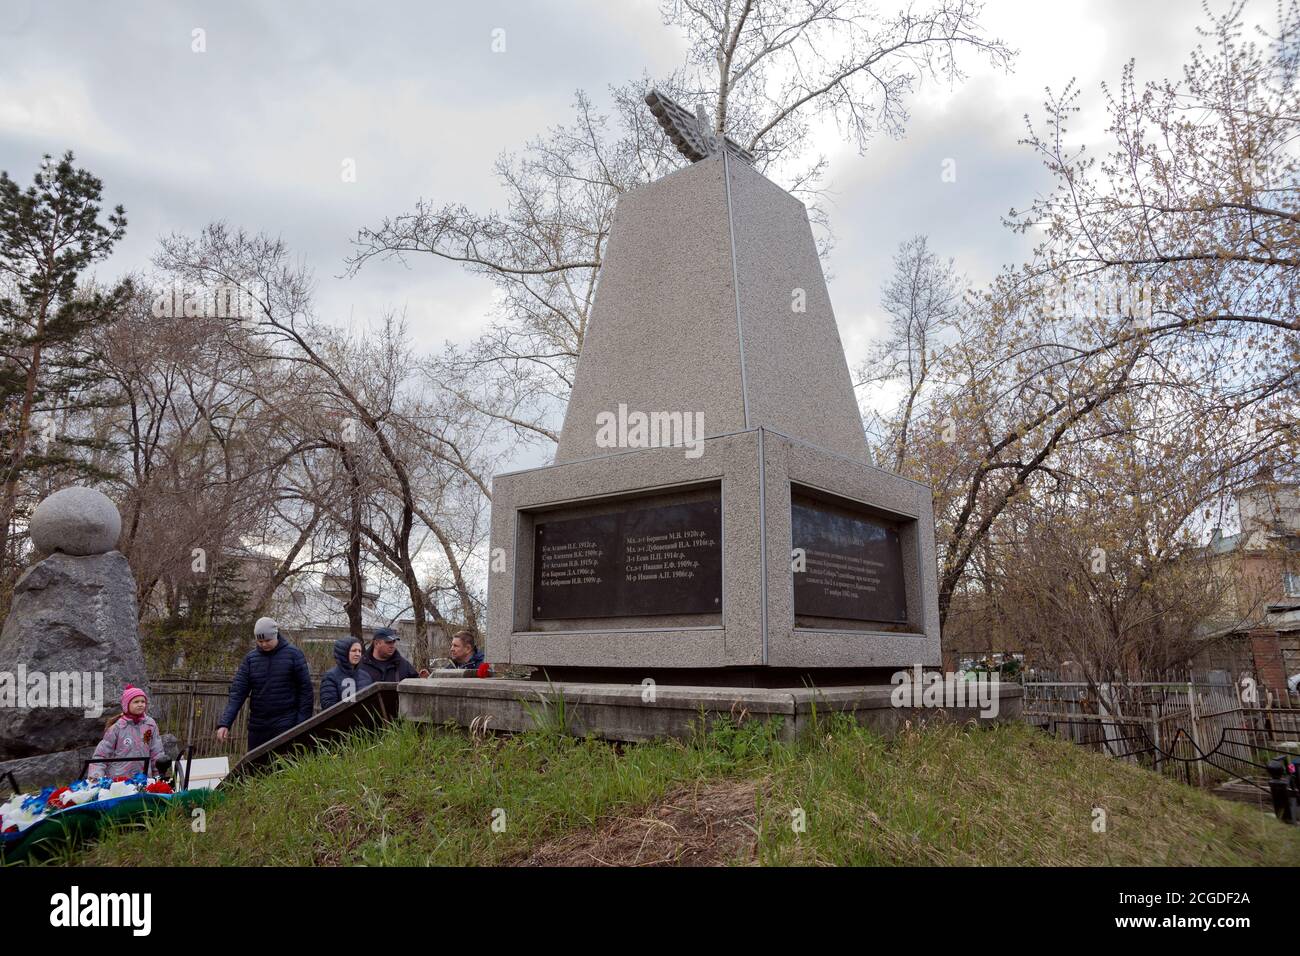 La gente è in piedi davanti al Cenotaph al Piloti che si sono schiantati su aerei durante la seconda guerra mondiale ai più vecchi Troitsk cimitero (1842) in città Foto Stock